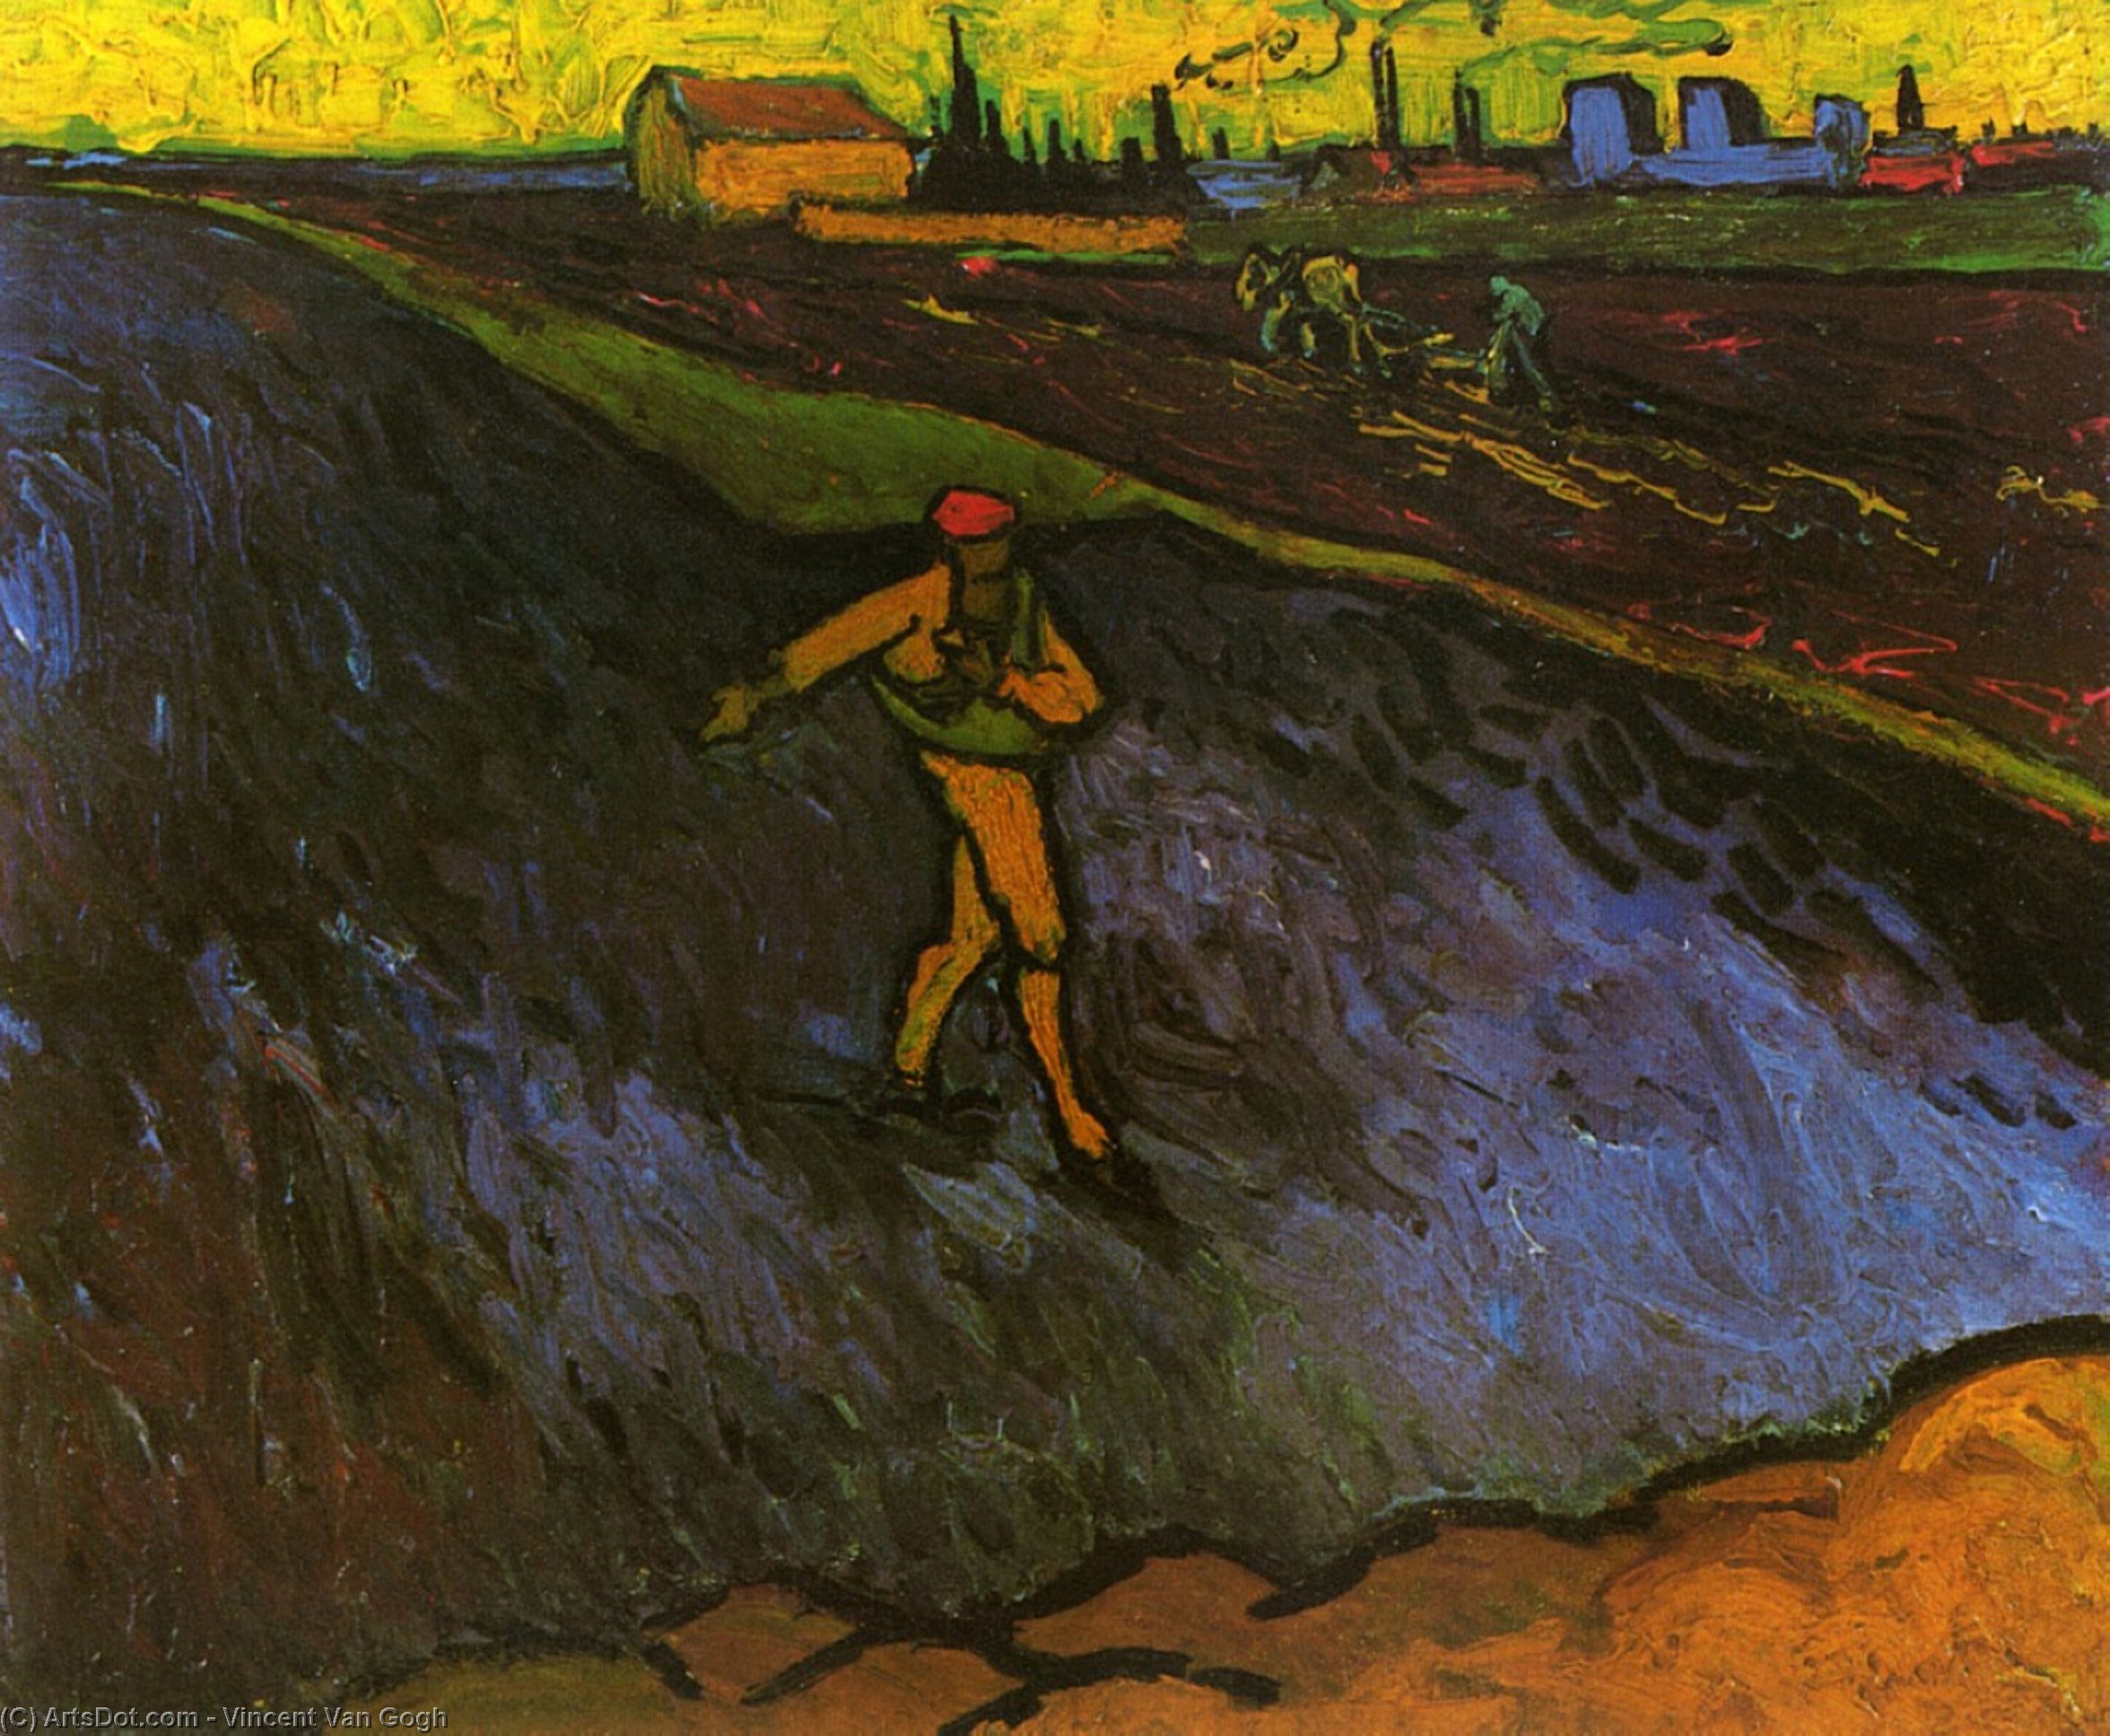 WikiOO.org - Enciklopedija likovnih umjetnosti - Slikarstvo, umjetnička djela Vincent Van Gogh - The Sower: Outskirts of Arles in the Background